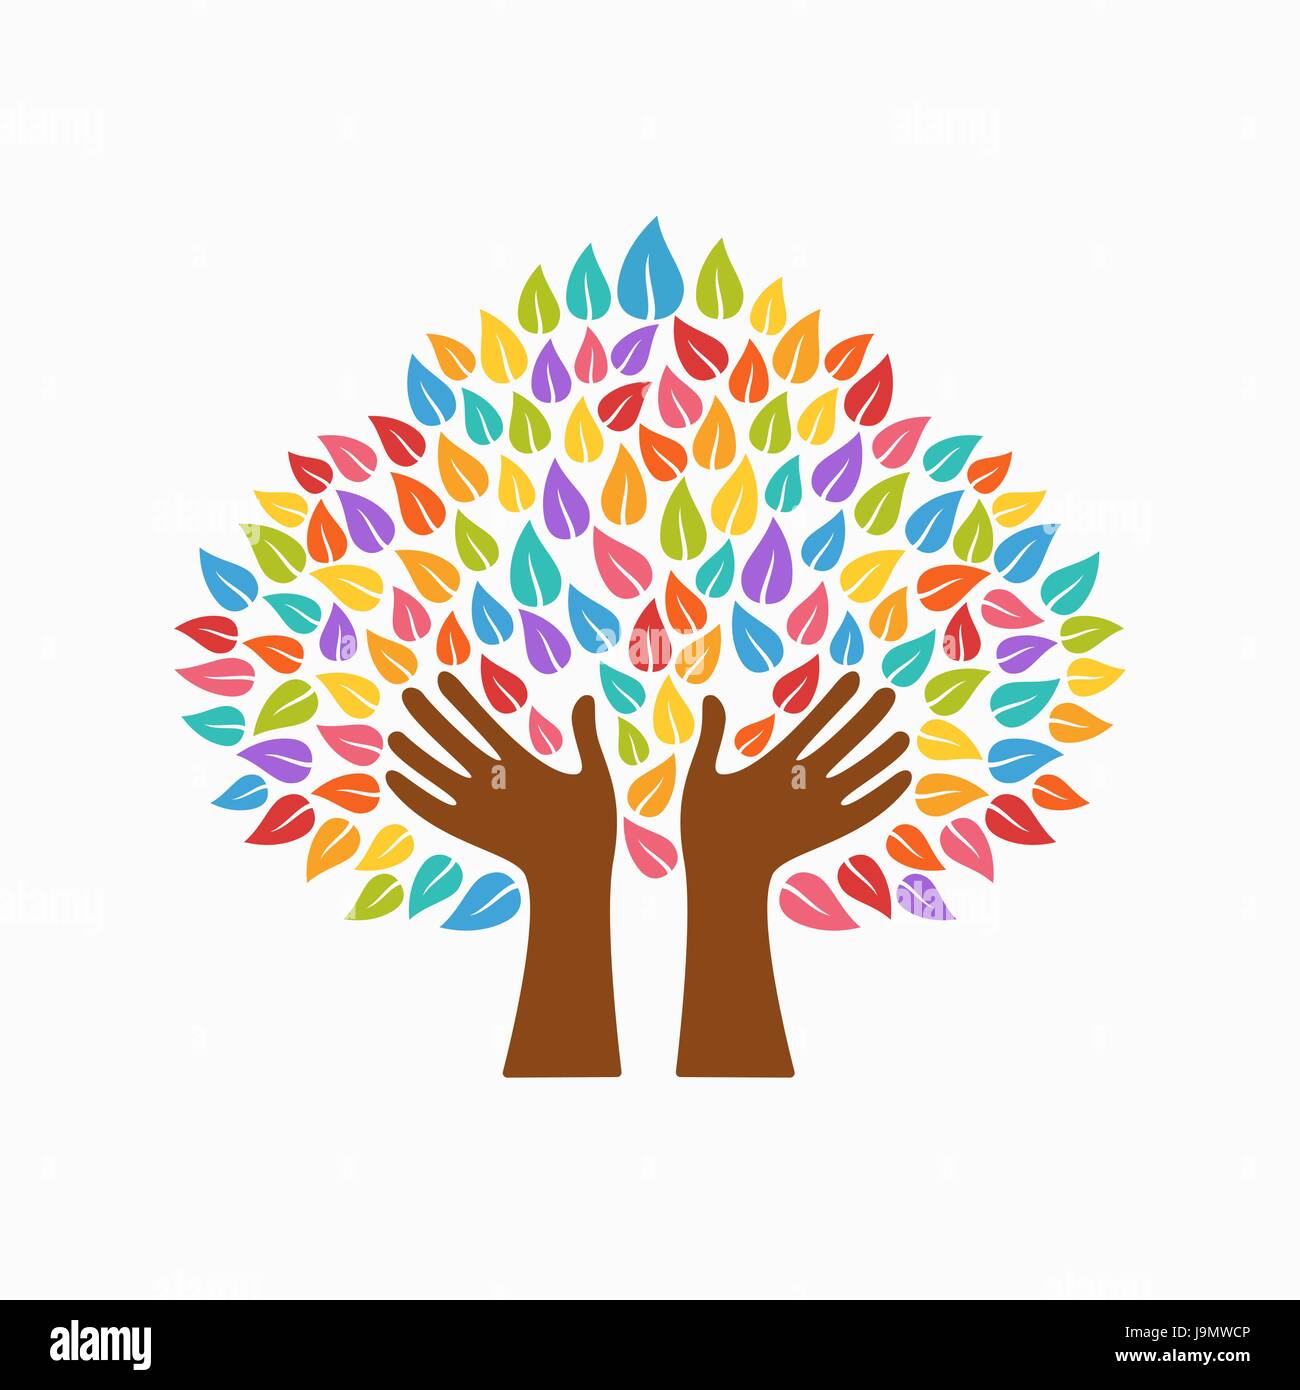 Simbolo di albero con mani di uomo e foglie multicolore. Concetto illustrazione per organizzazione aiutano, ambiente progetto o il lavoro sociale. EPS10 vettore. Illustrazione Vettoriale